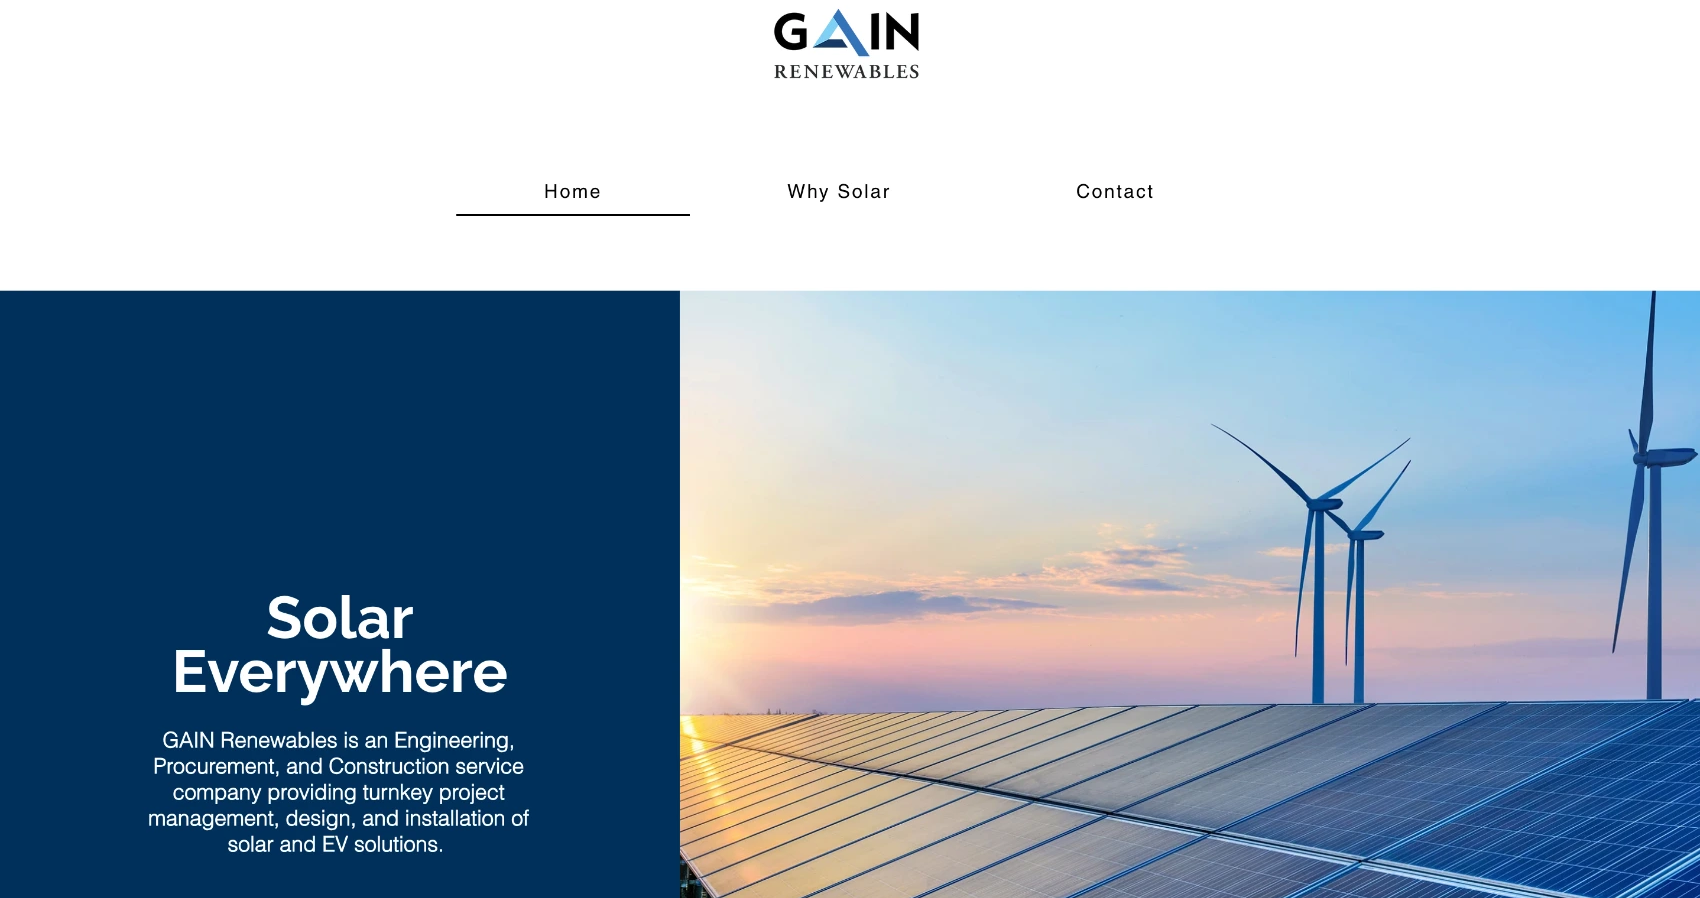 GAIN Renewable Services Inc